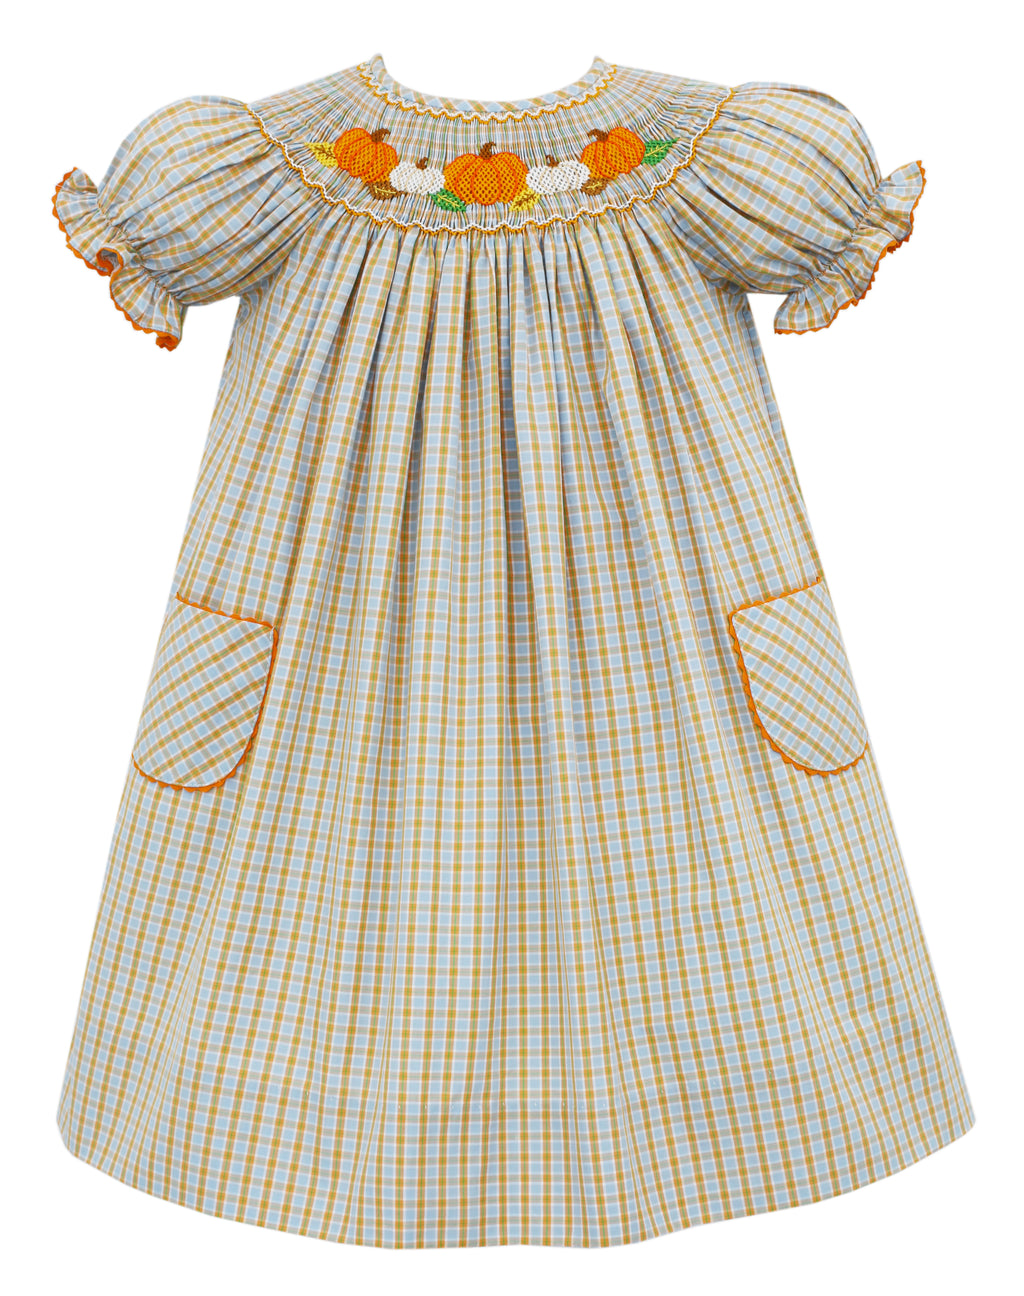 Pumpkins Blue Orange Plaid Smocked Bishop Dress with Pockets